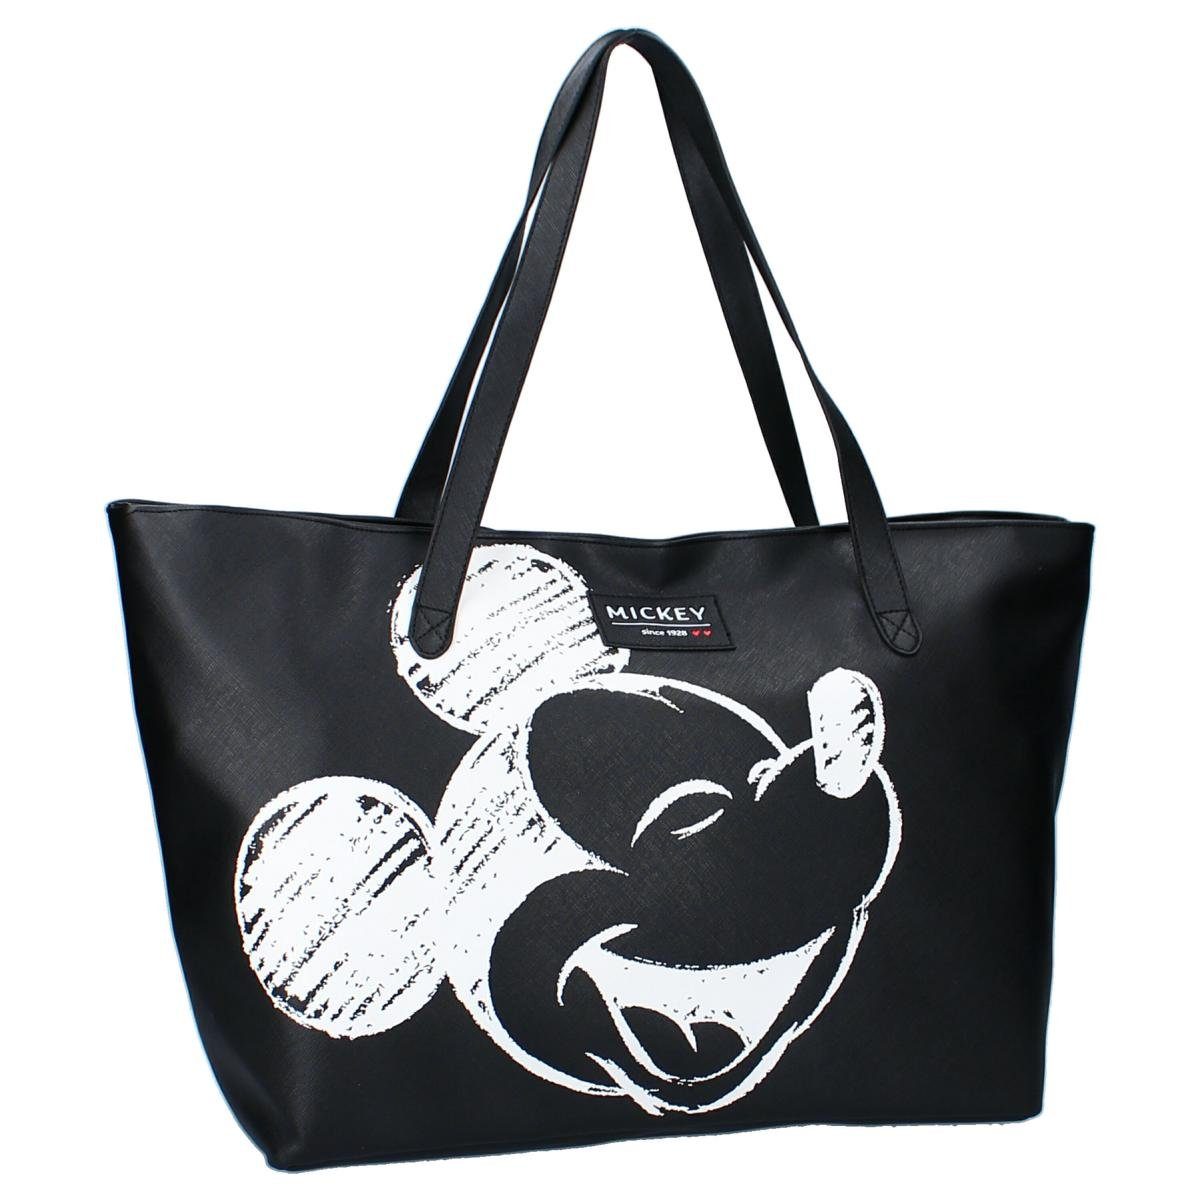 Große Damen Shopping Bag Tasche, Kunstleder, Disney Mickey Mouse